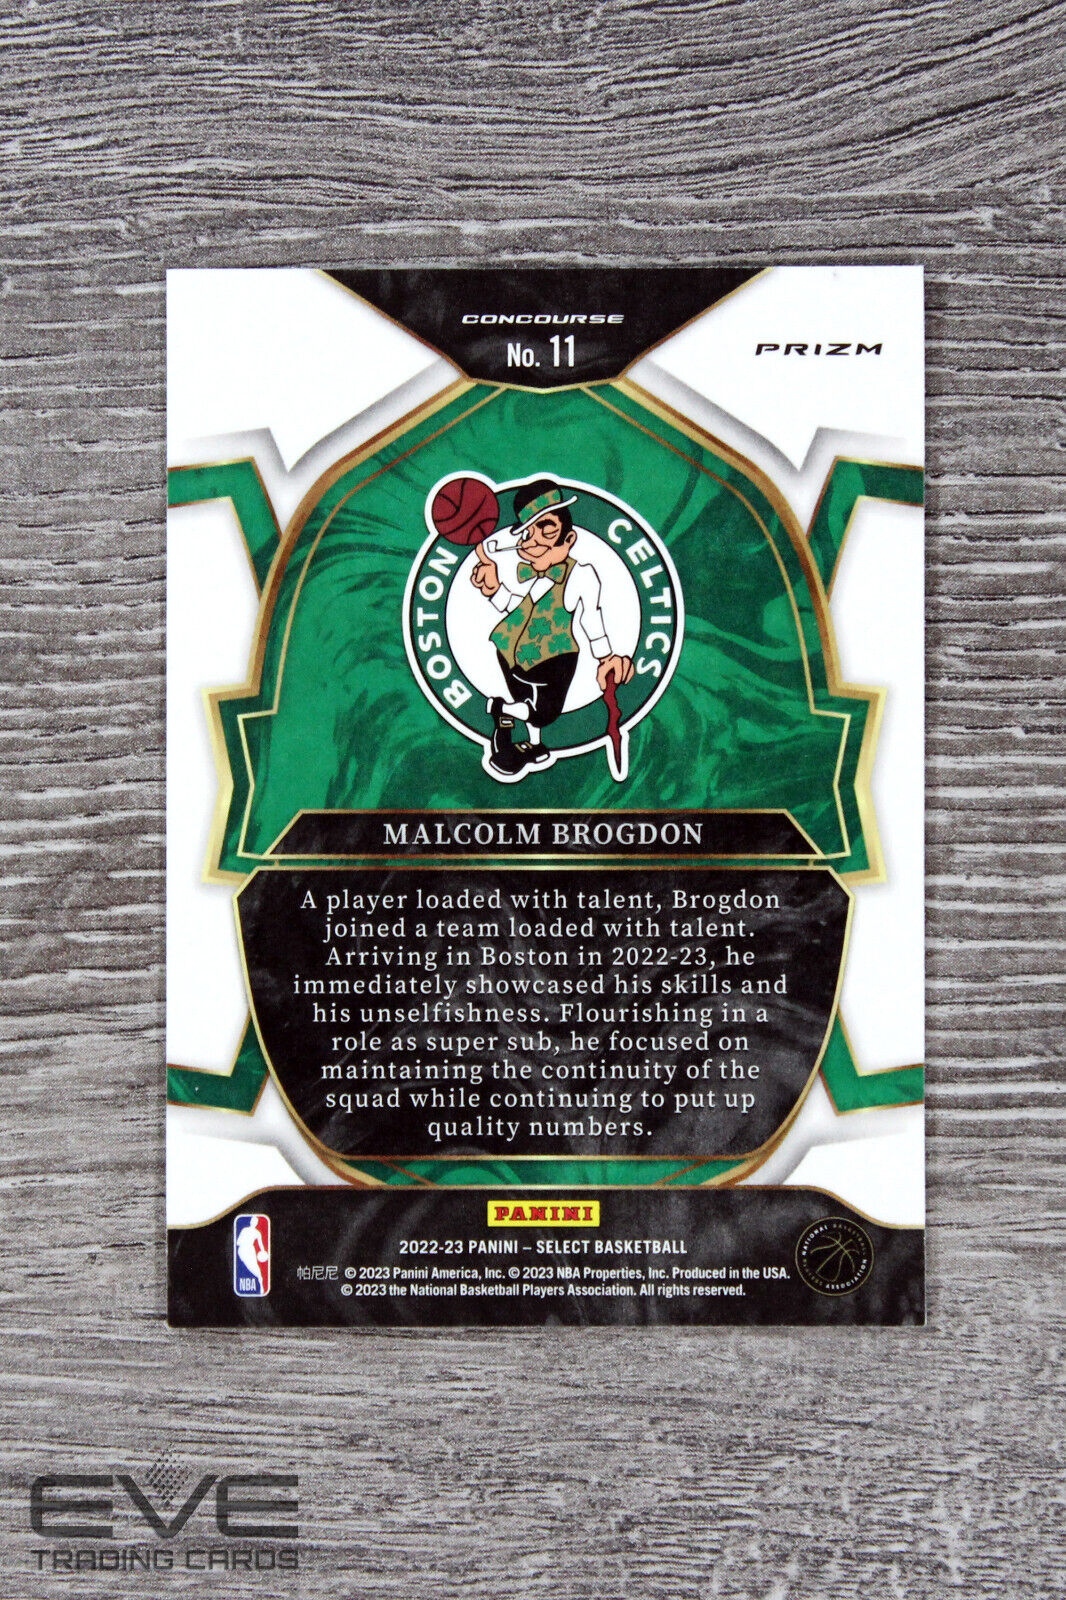 2023 Panini Select Basketball Card #11 Malcolm Brogdon Tri-Color Prizm - NM/M